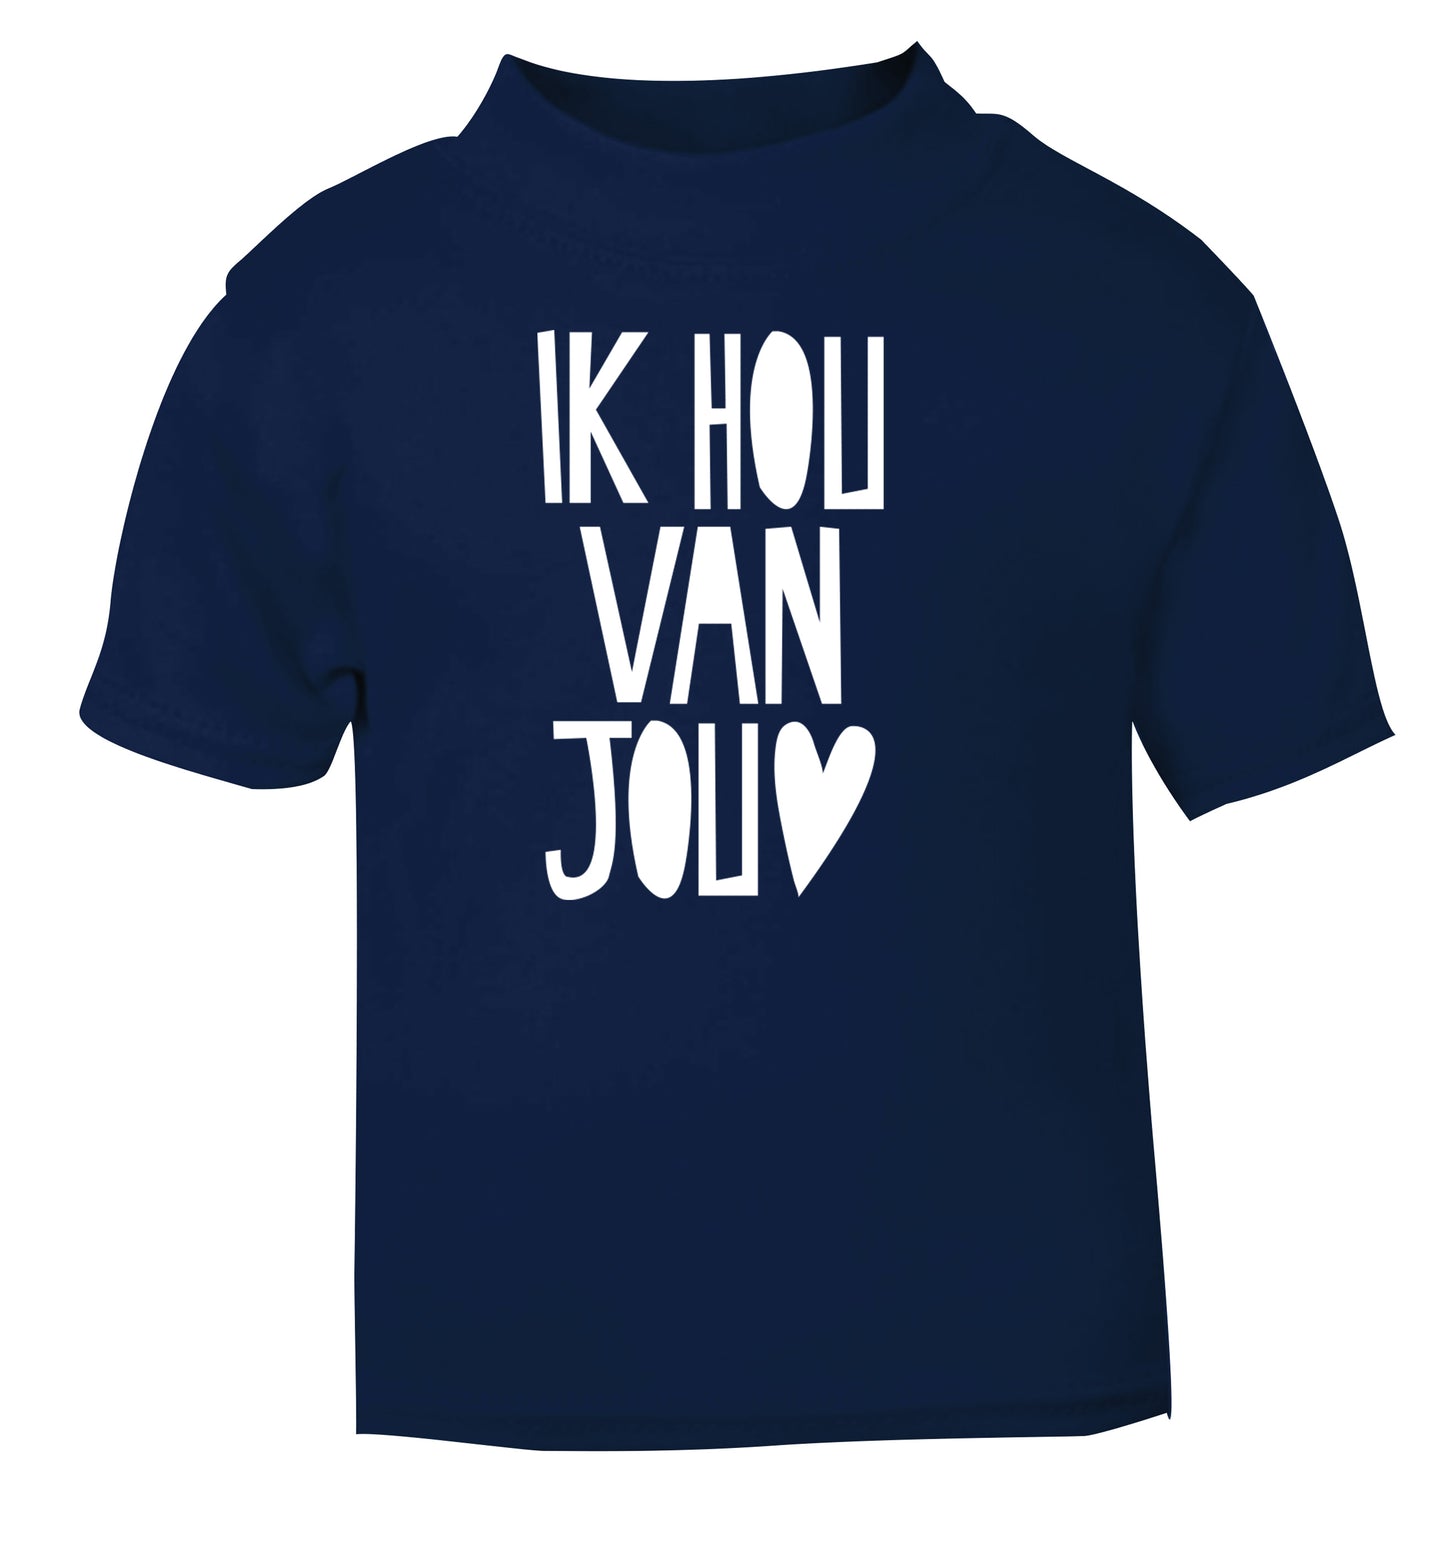 Ik Hau Van Jou - I love you navy Baby Toddler Tshirt 2 Years